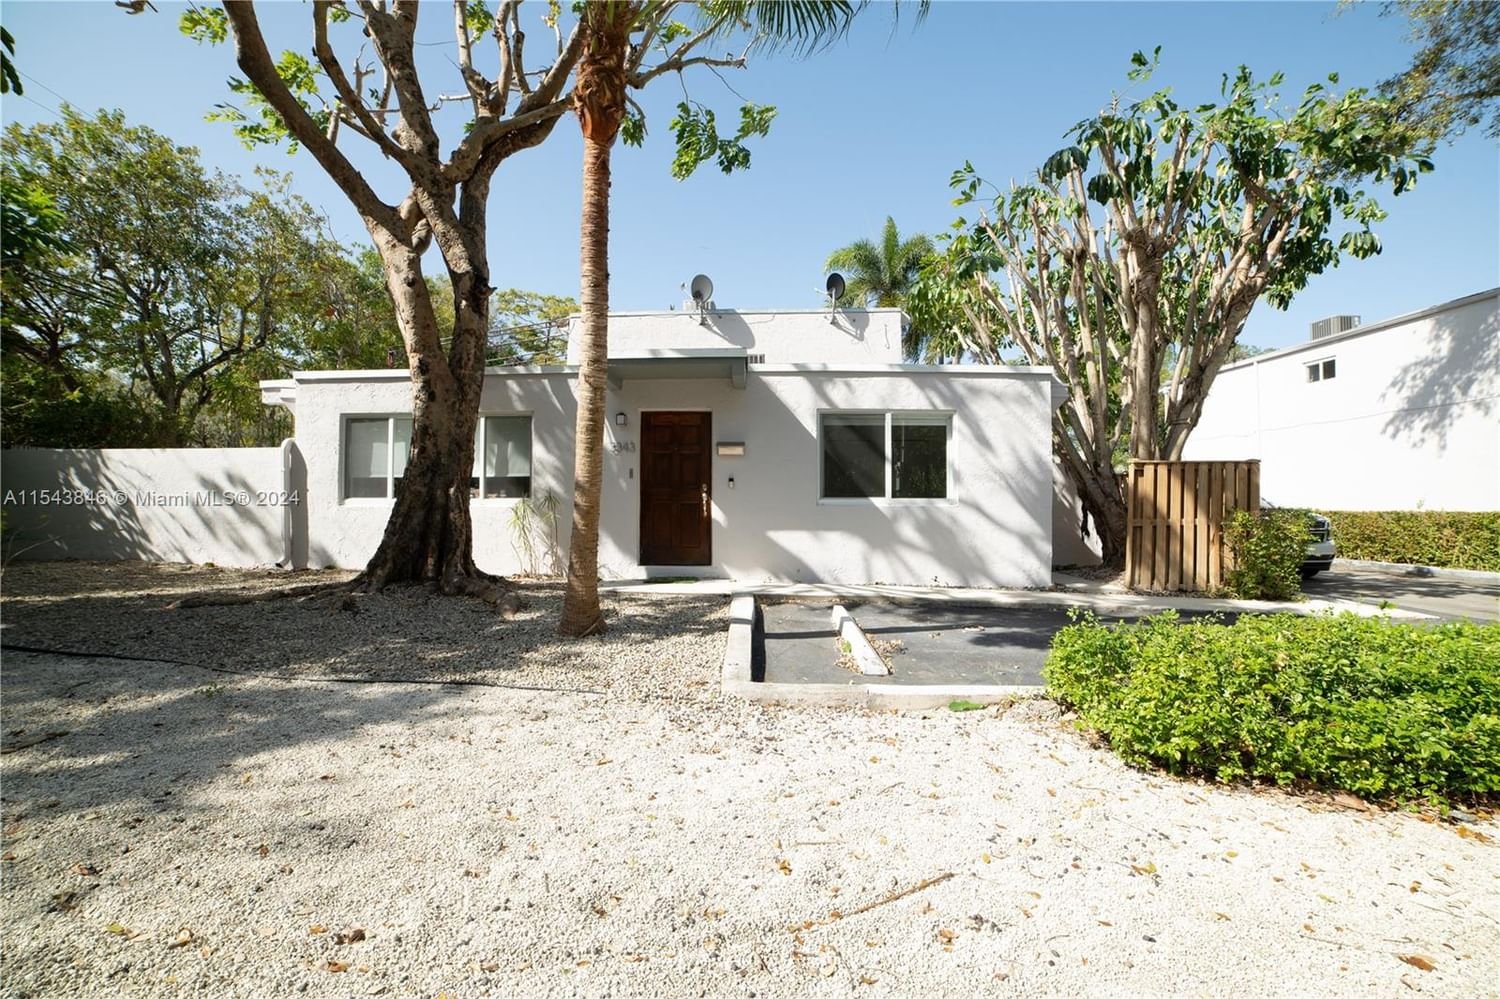 Real estate property located at 3343 Franklin Ave #3343, Miami-Dade County, STIRRUP GROVE SUB NO 1, Miami, FL